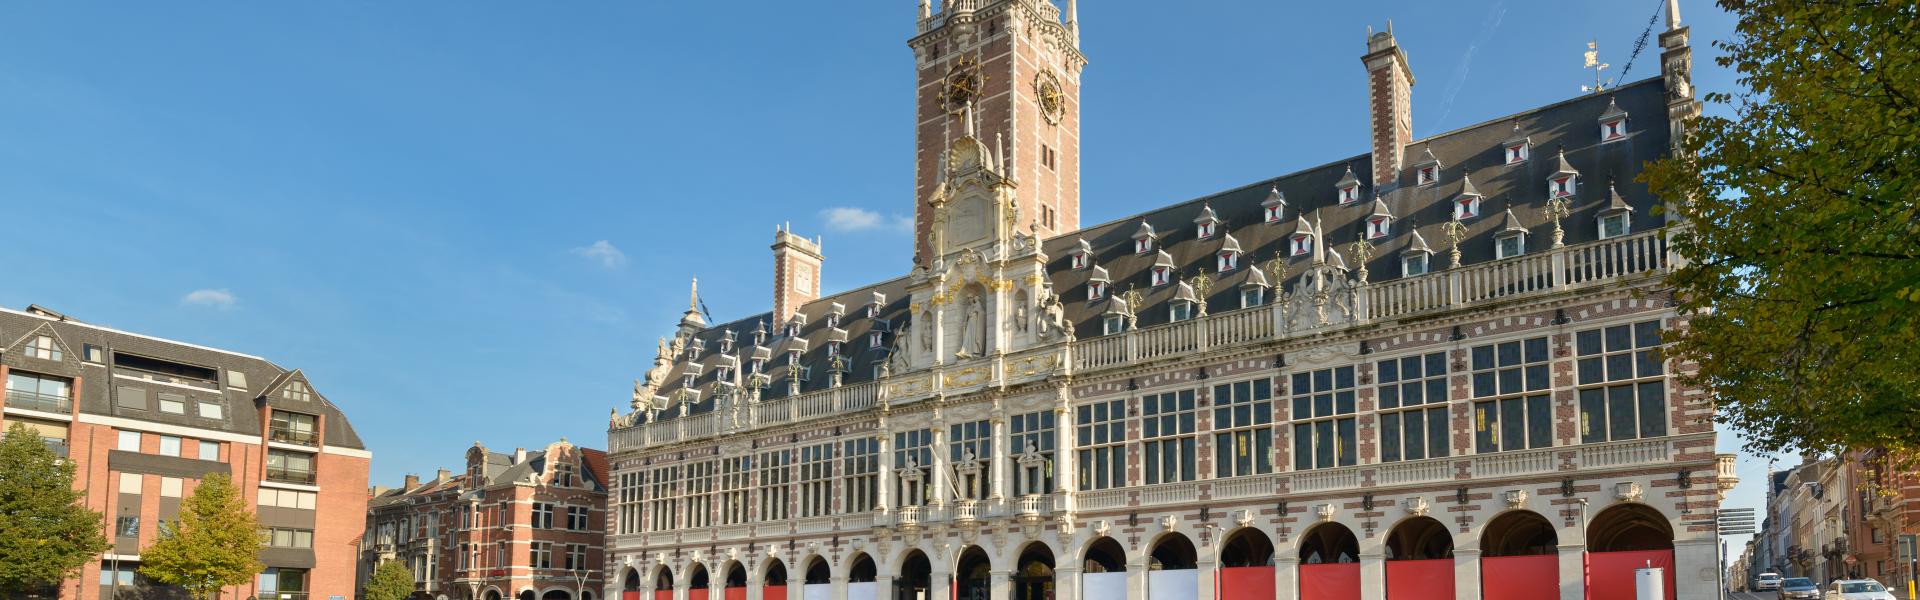 Uw vakantiewoning in Leuven: meer dan alleen een stedentrip - Casamundo